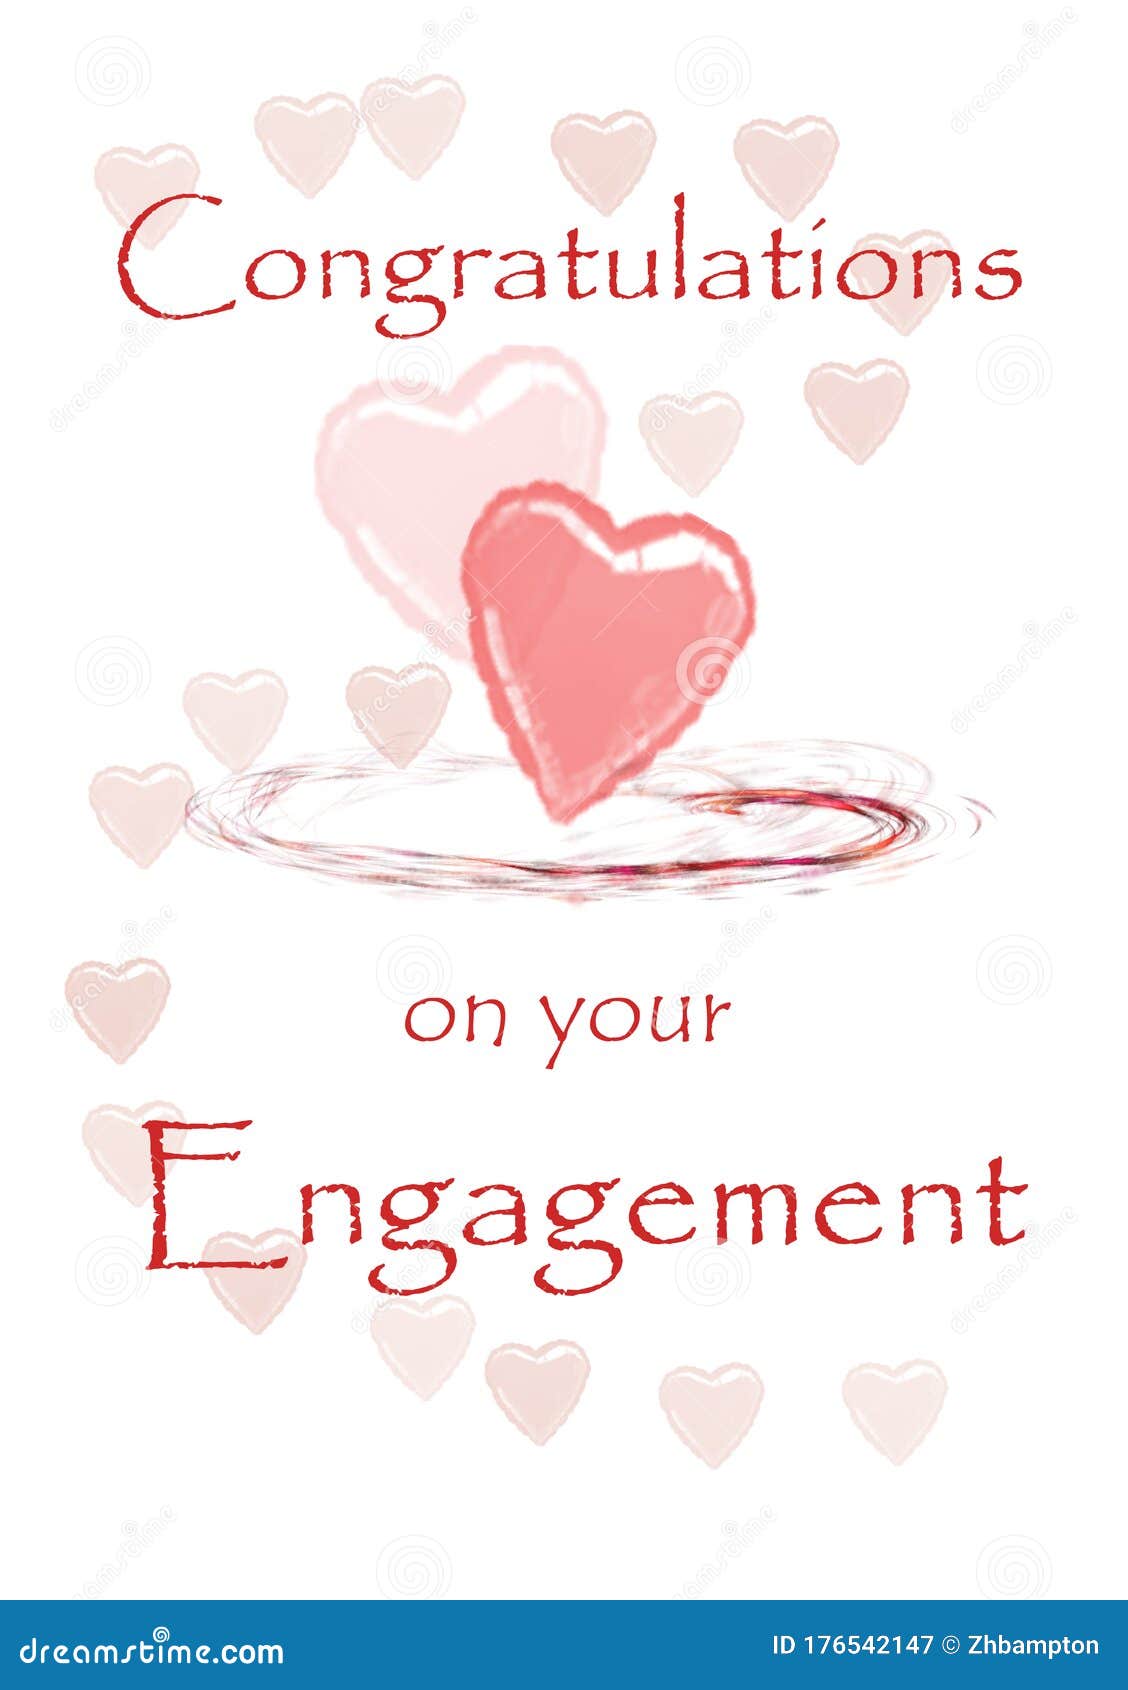 Congrats Engagement Images